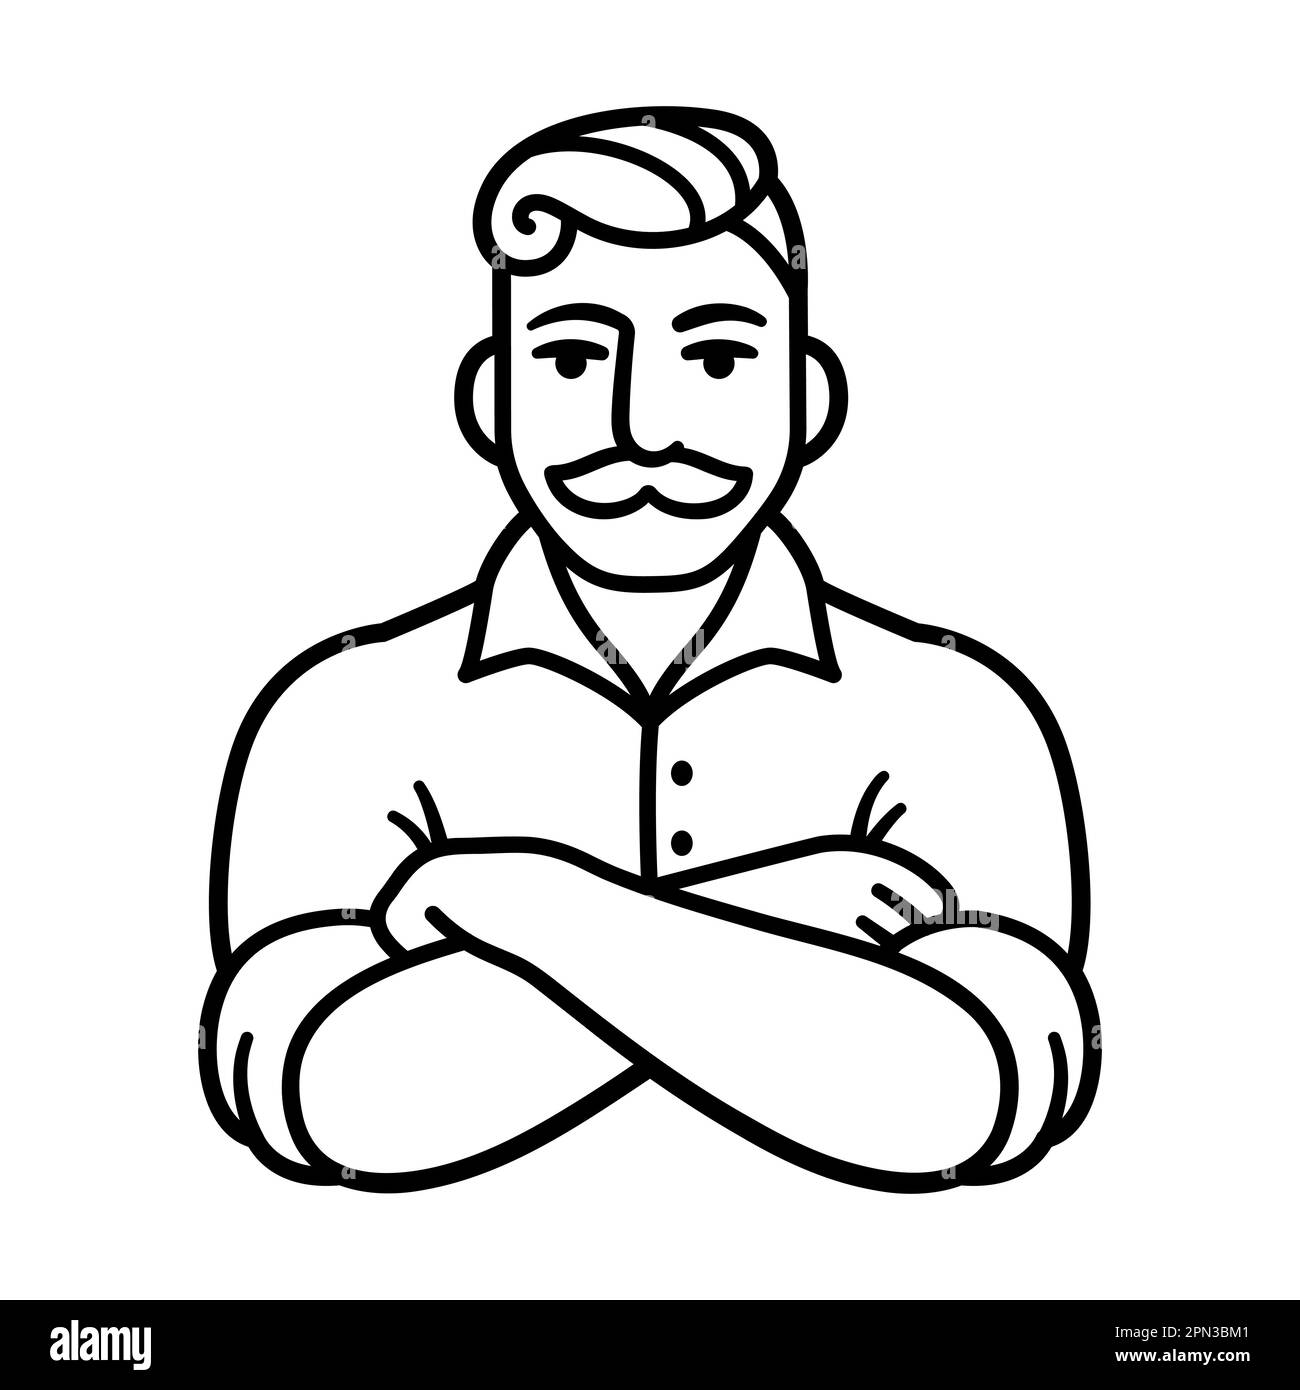 Schwarz-weiße Linienzeichnung eines Mannes mit Schnurrbart, gekreuzten Armen und gerollten Ärmeln. Stylisches Hüftslip-Logo. Stock Vektor